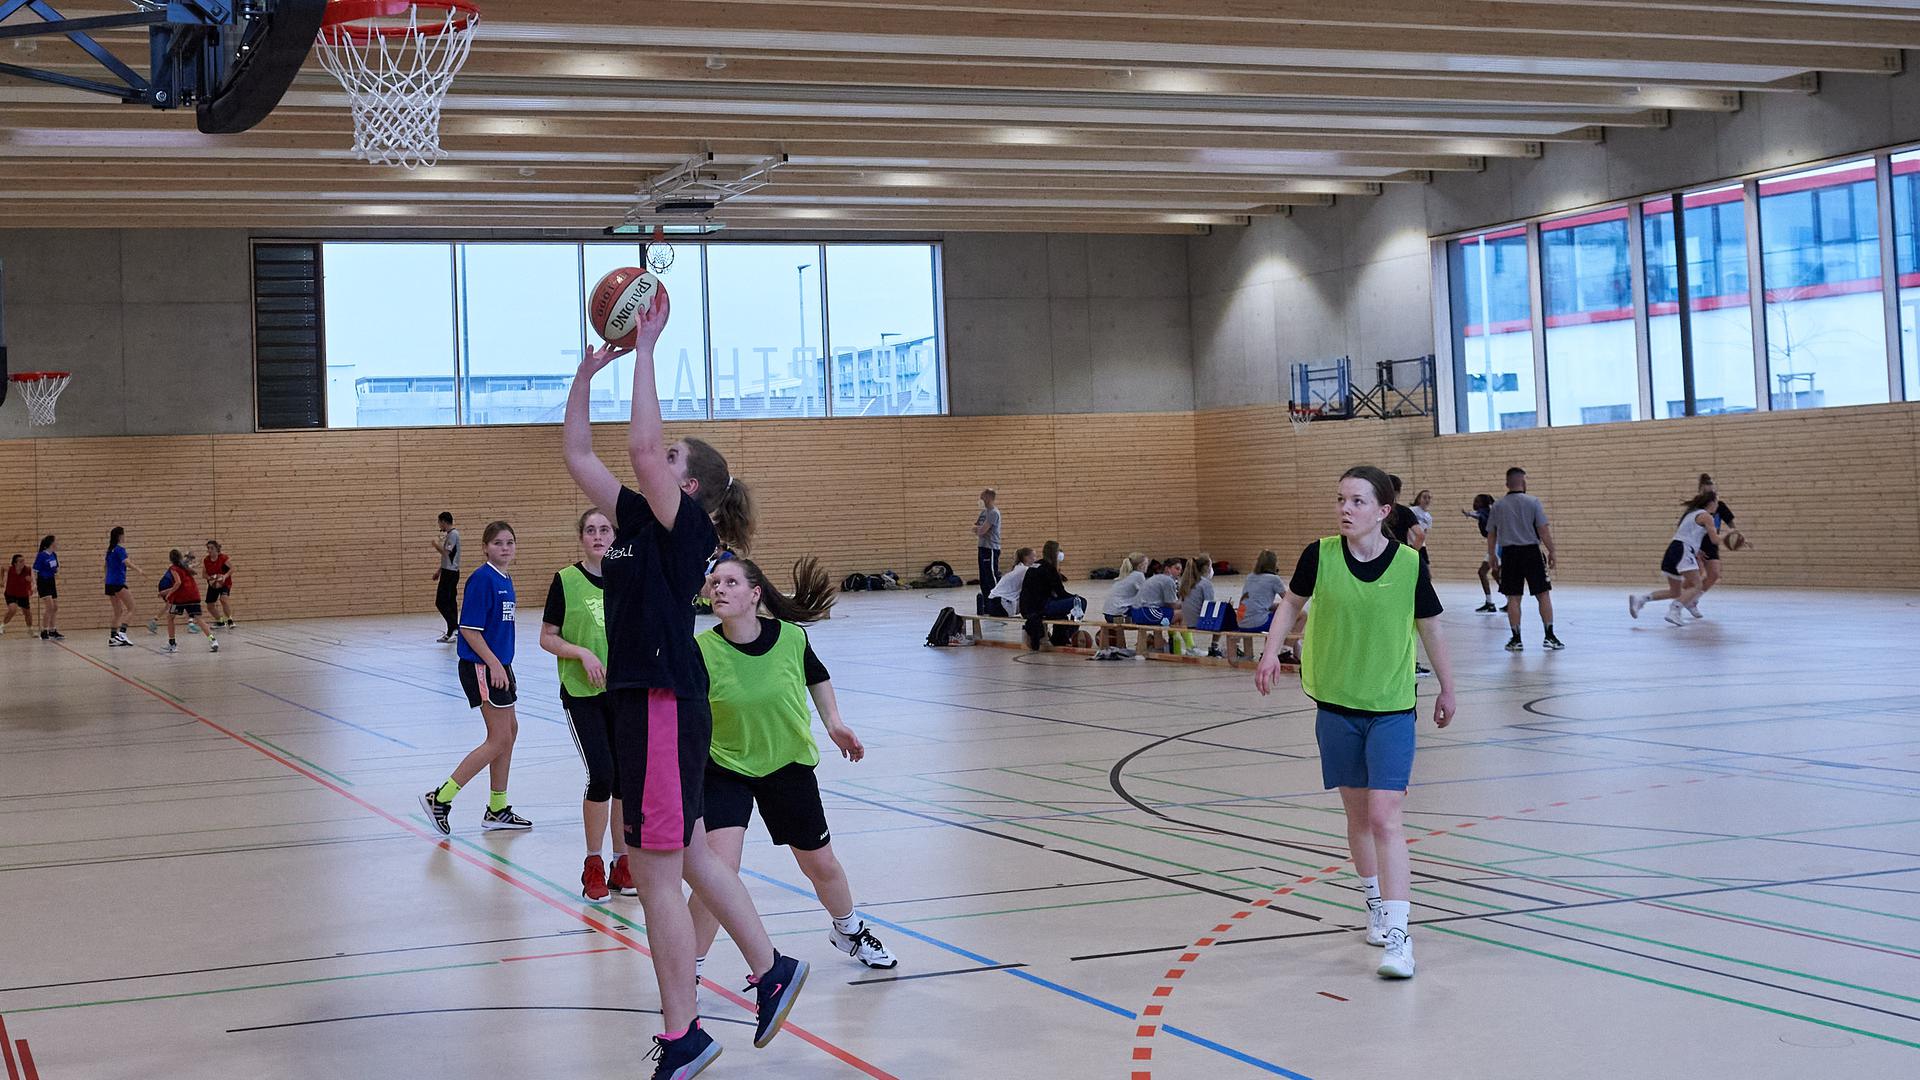 Basketballturnier 3x3 Schulsporthalle Bruchsal